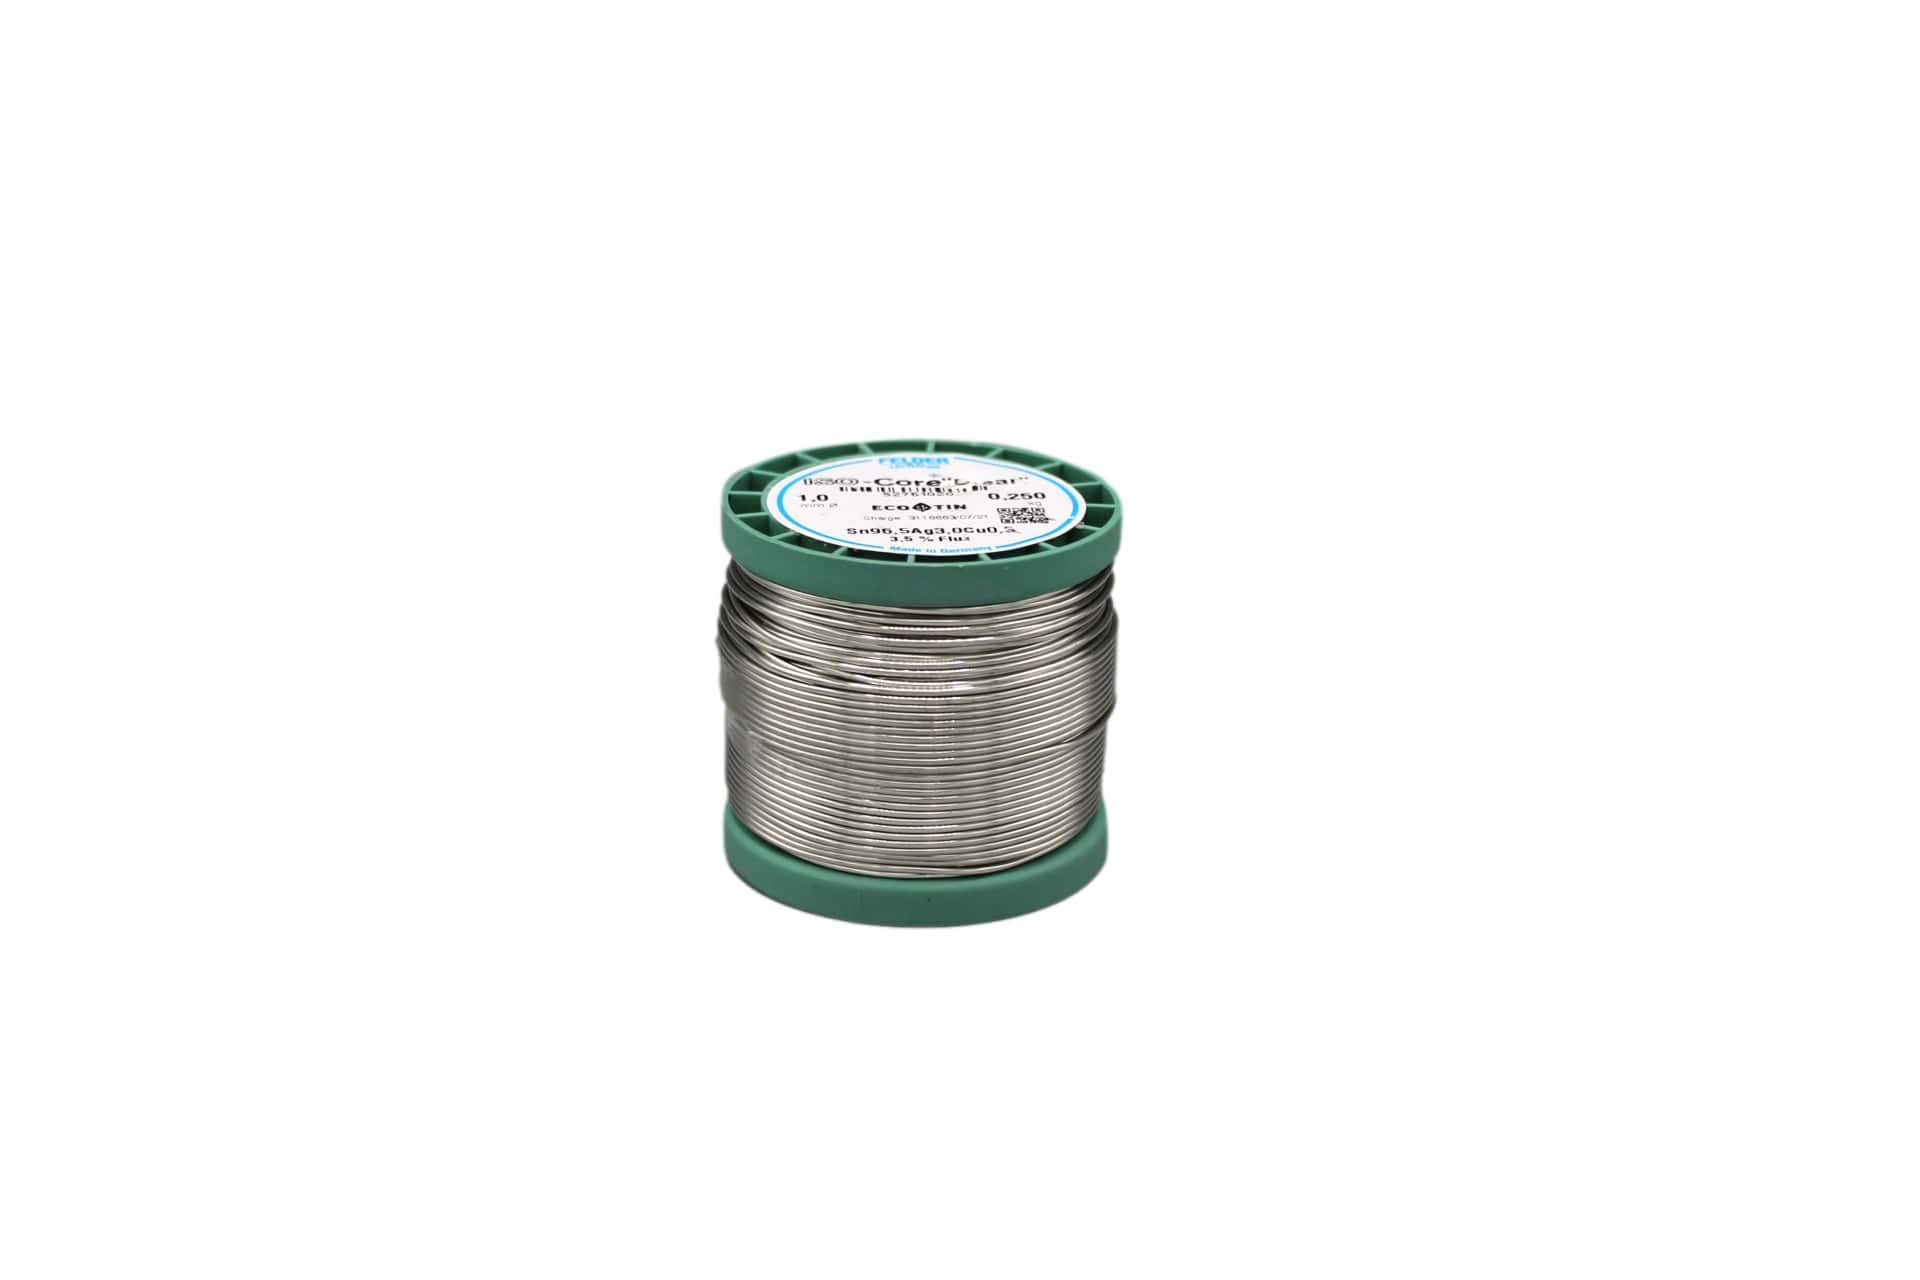 52761020 Felder solder wire, lead-free, SAC (Sn96,5Ag3,0Cu0,5), 1 mm, 250g, roll